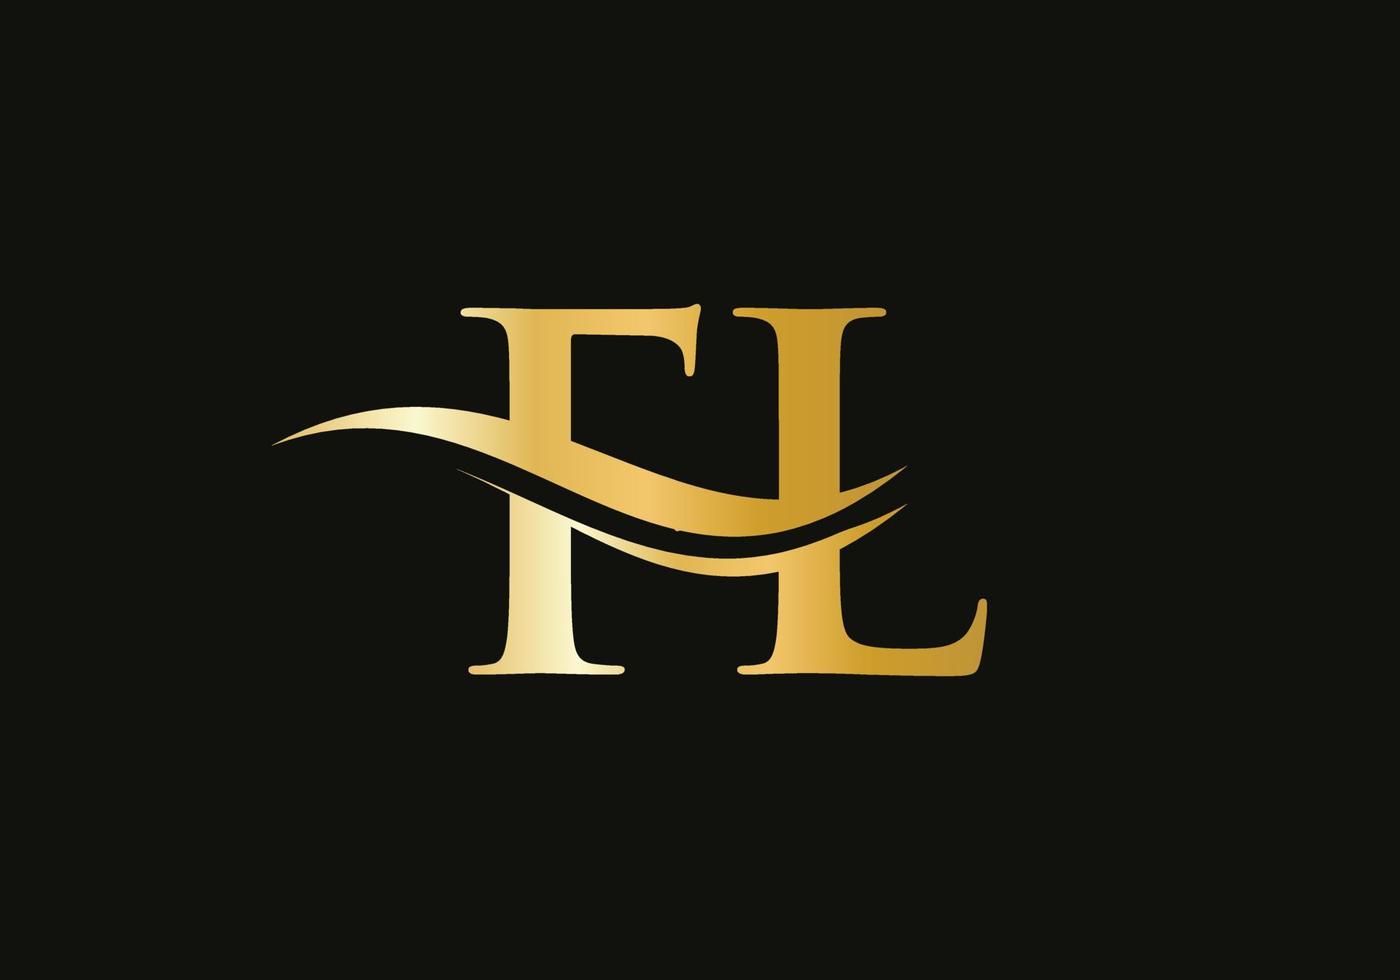 carta fl creativa con concepto de lujo. diseño moderno del logotipo de fl para la identidad empresarial y empresarial vector